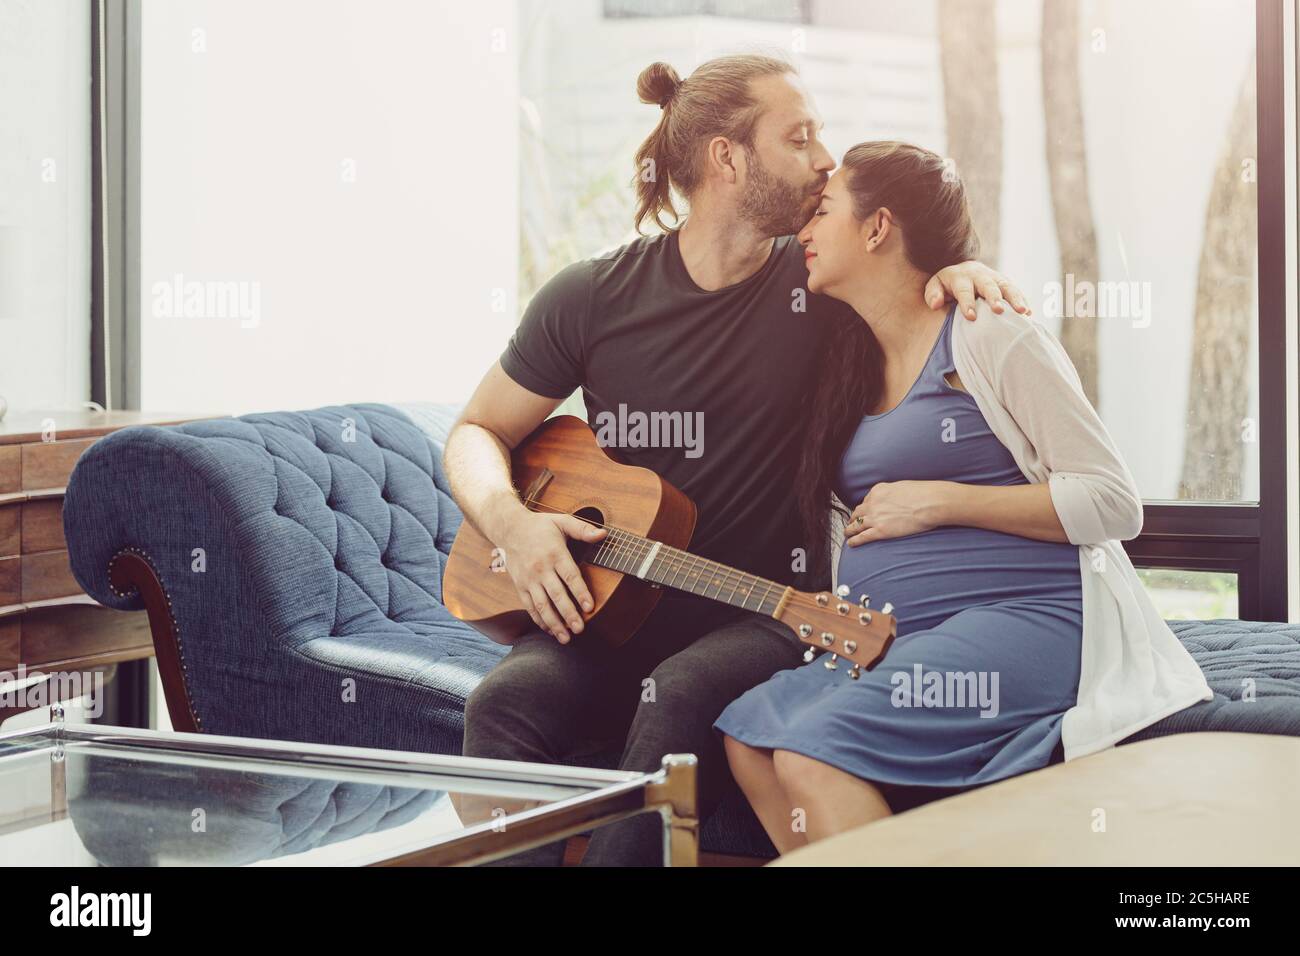 Ehemann mit schwangeren Frau zu Hause bleiben schön spielen Gitarre Musik für Baby küssen und zeigen Liebe zusammen Stockfoto